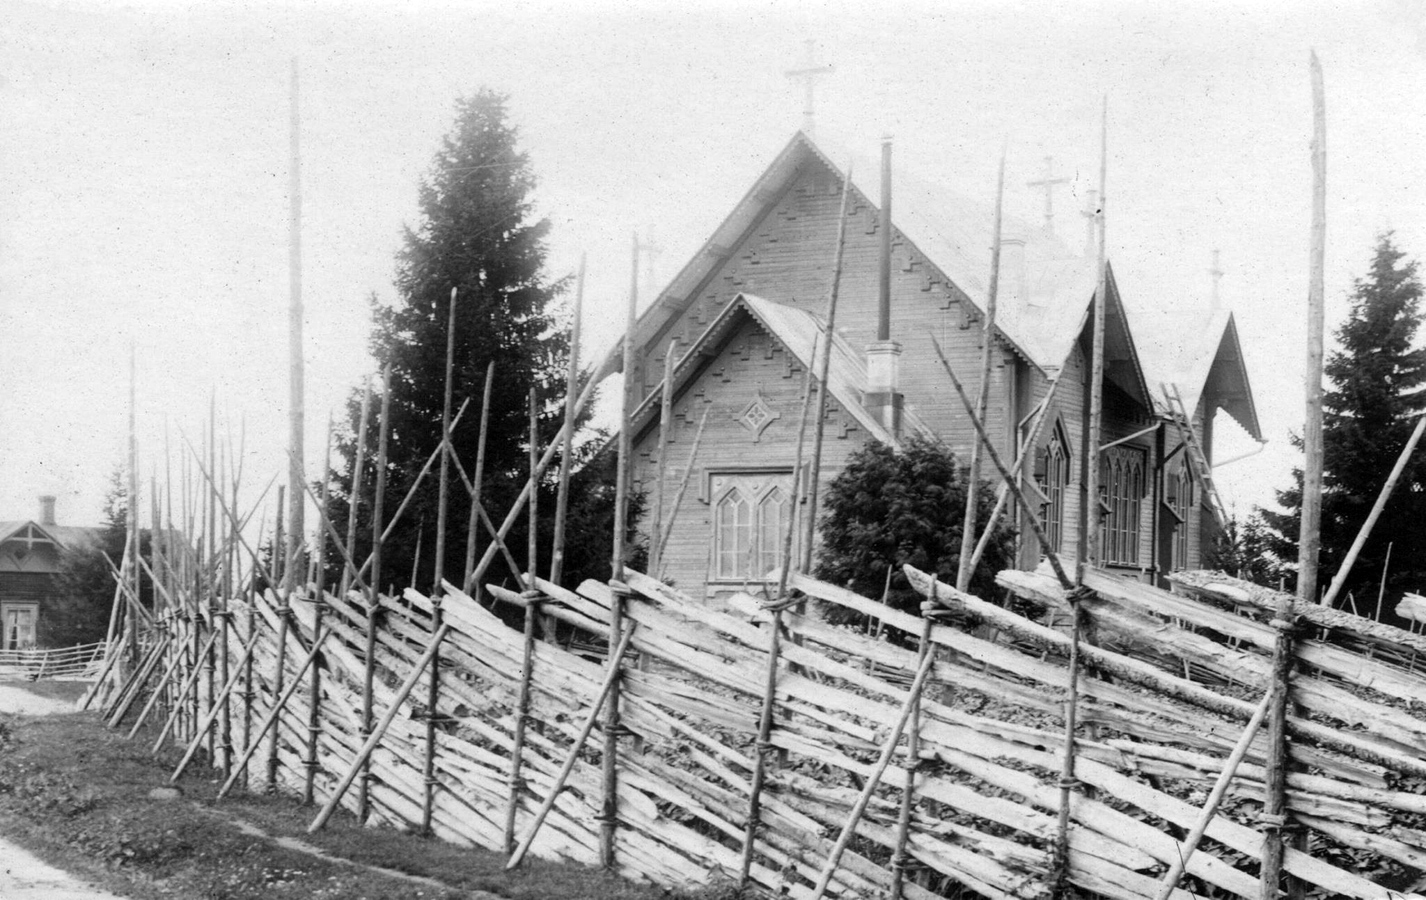 1928. Lutheran church